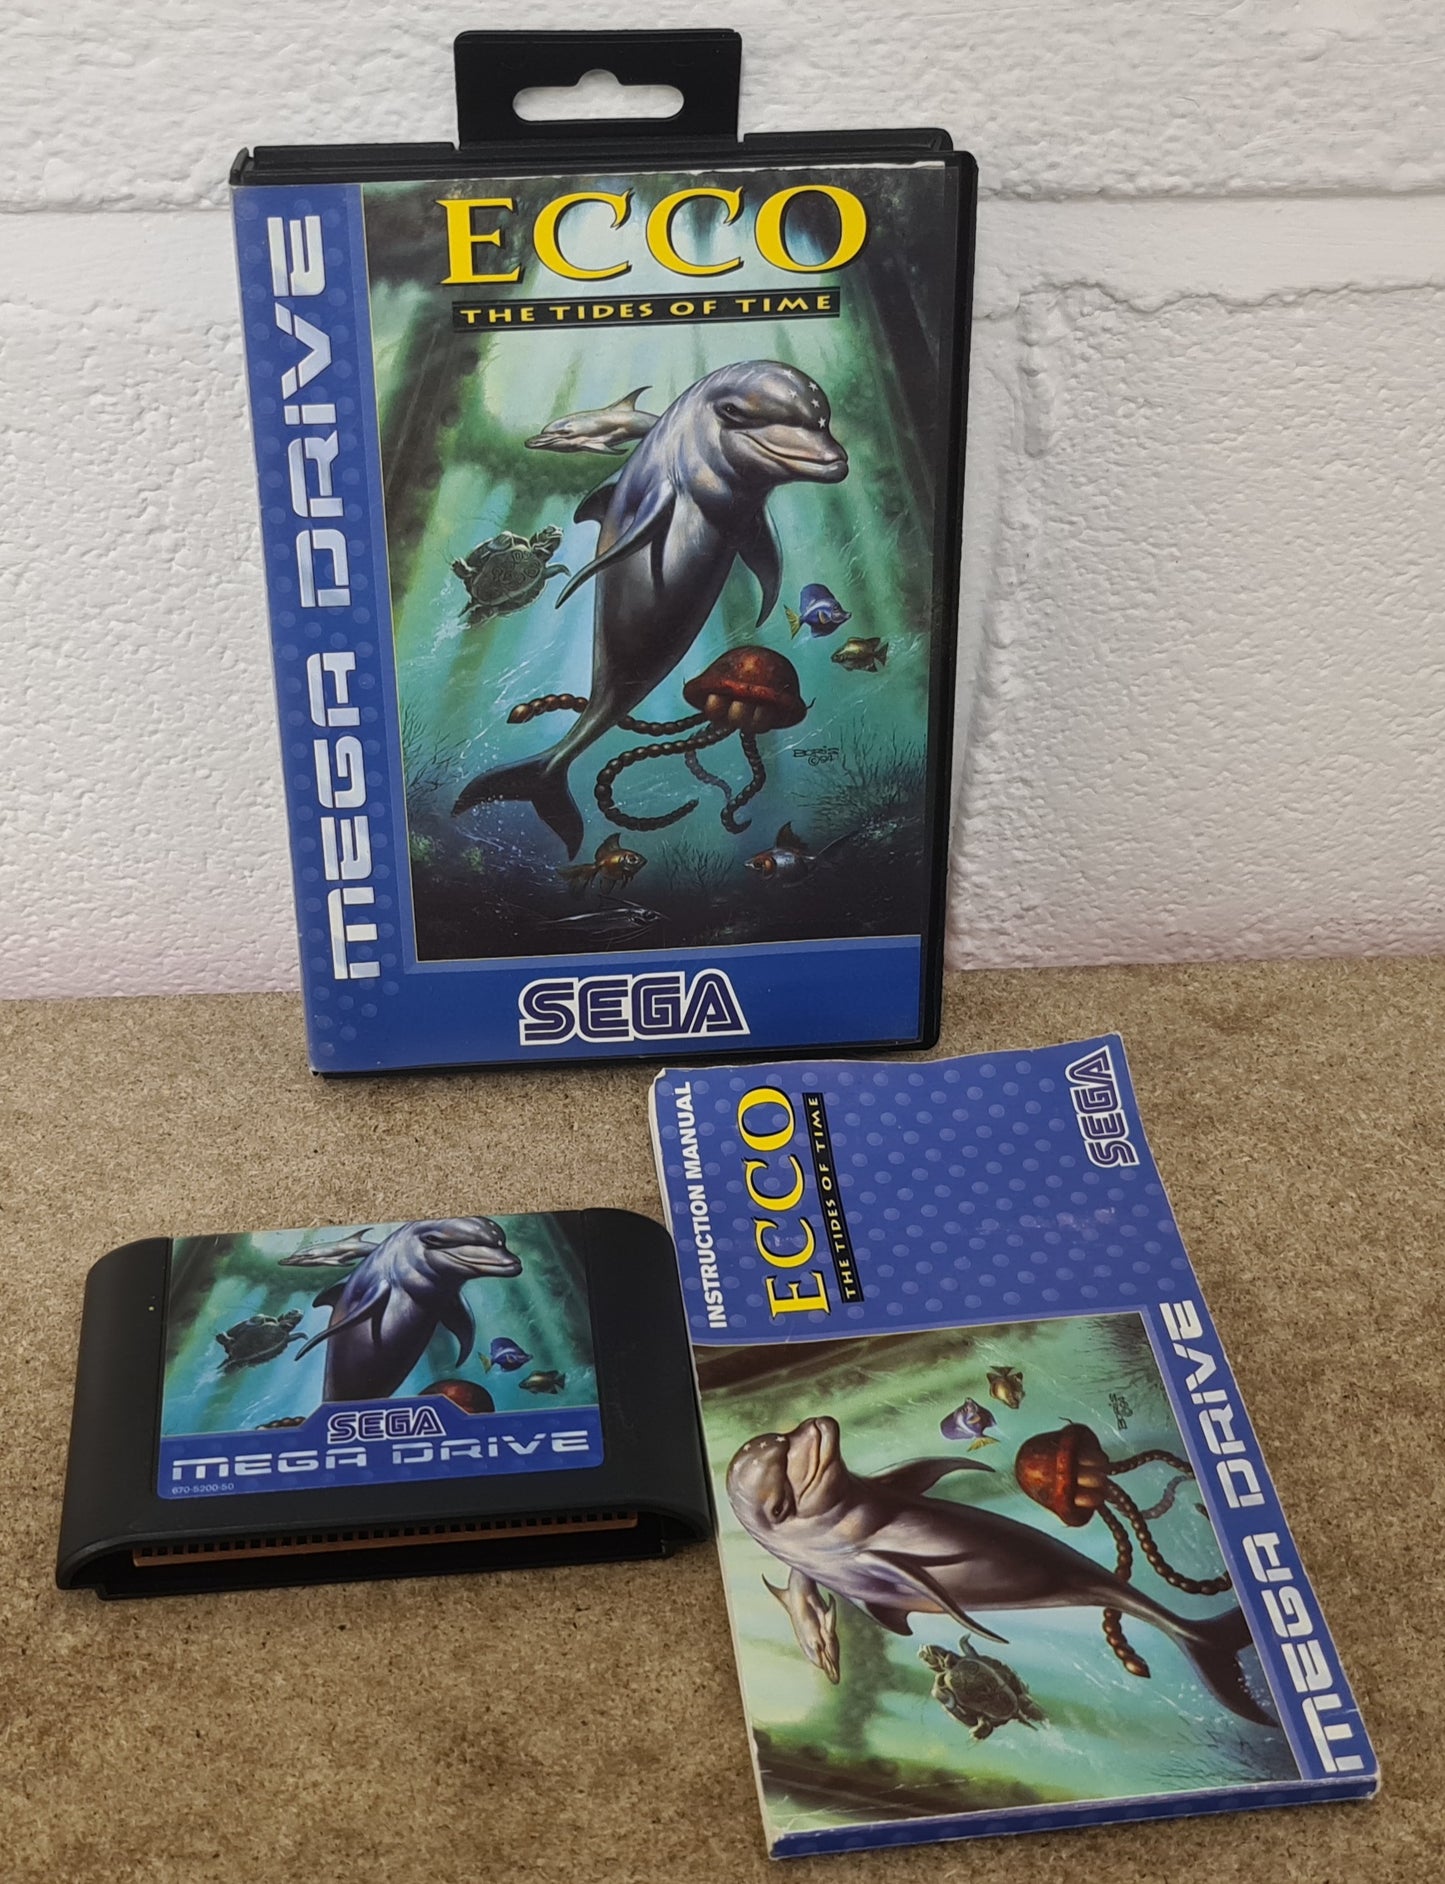 Ecco the Tides of Time Sega Mega Drive Game